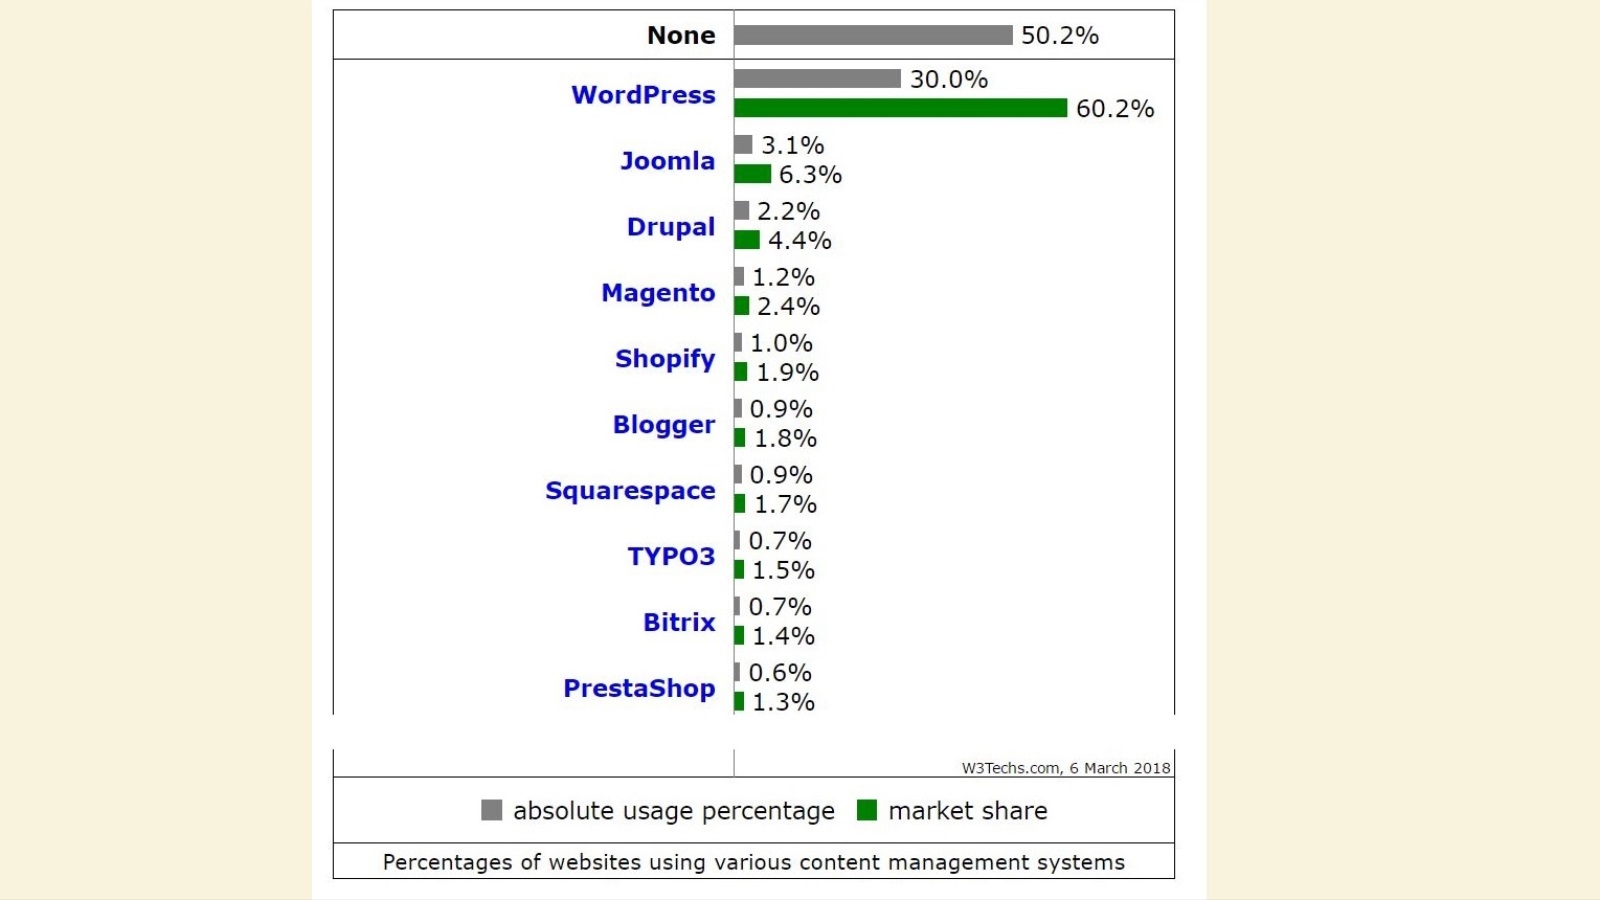 ‪تستحوذ وورد برس على 60% من سوق أنظمة إدارة المحتوى بفارق كبير عن الأنظمة المنافسة (w3techs)‬ تستحوذ وورد برس على 60% من سوق أنظمة إدارة المحتوى بفارق كبير عن الأنظمة المنافسة (w3techs)